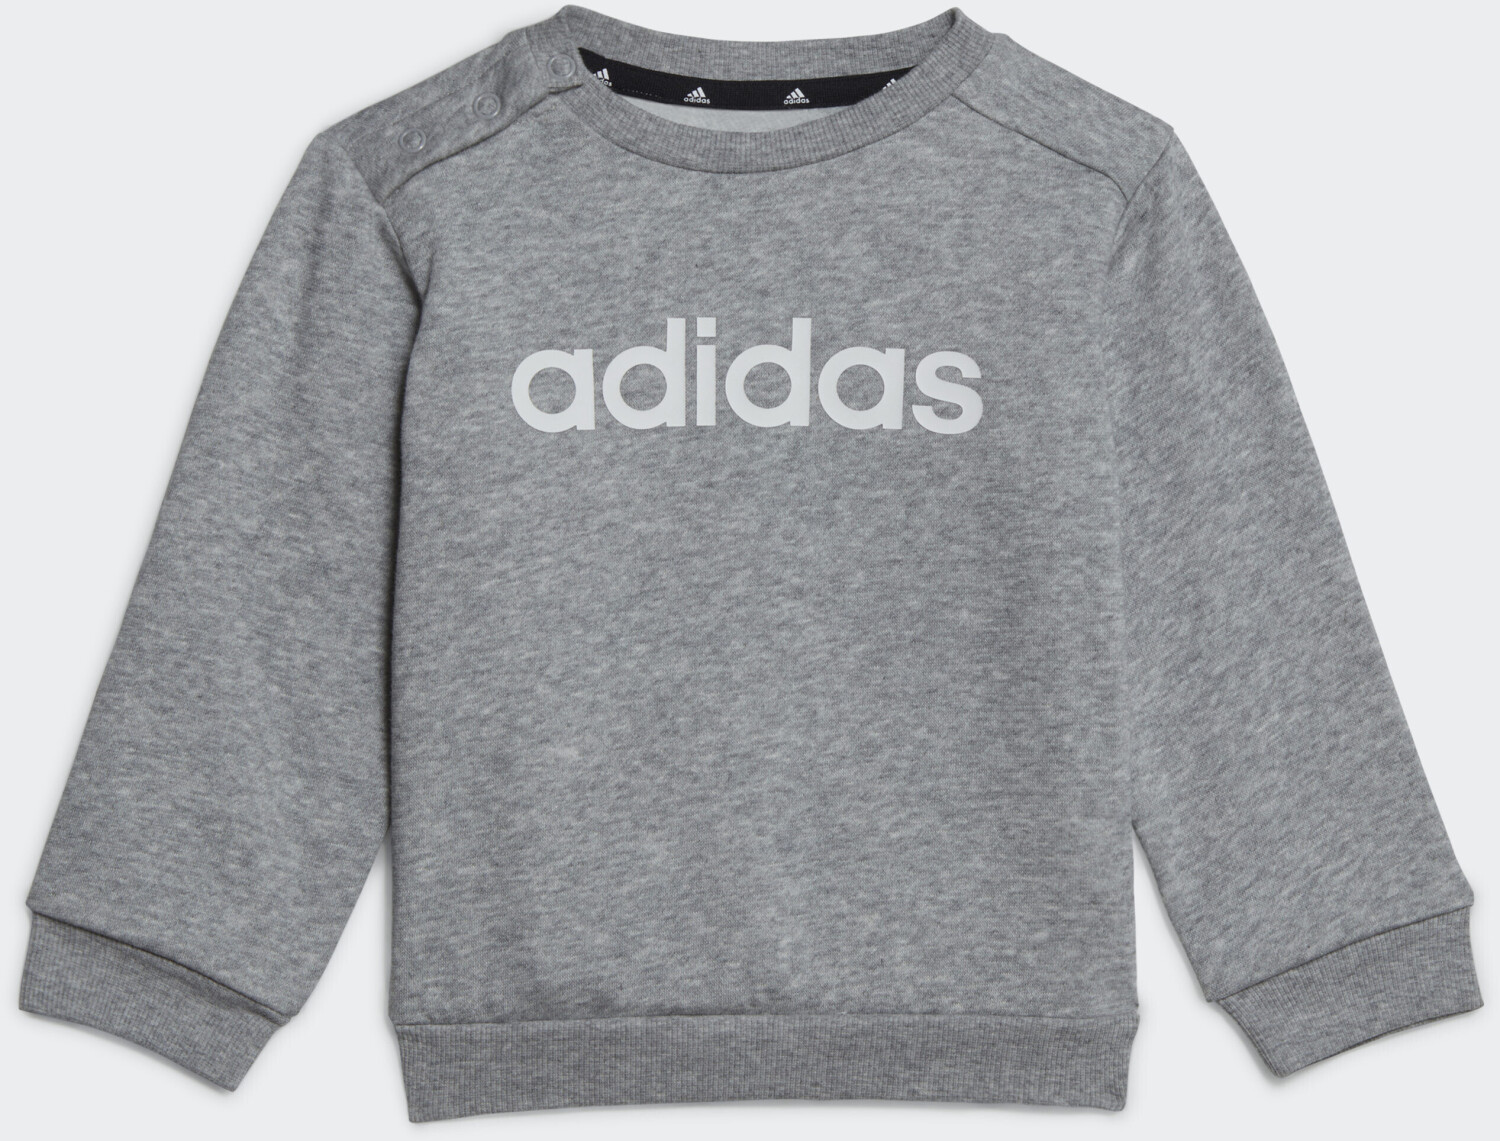 Adidas Kids Essentials Lineage Jogginganzug grey medium 18,30 heather/white bei (HR5882) Preisvergleich | € ab